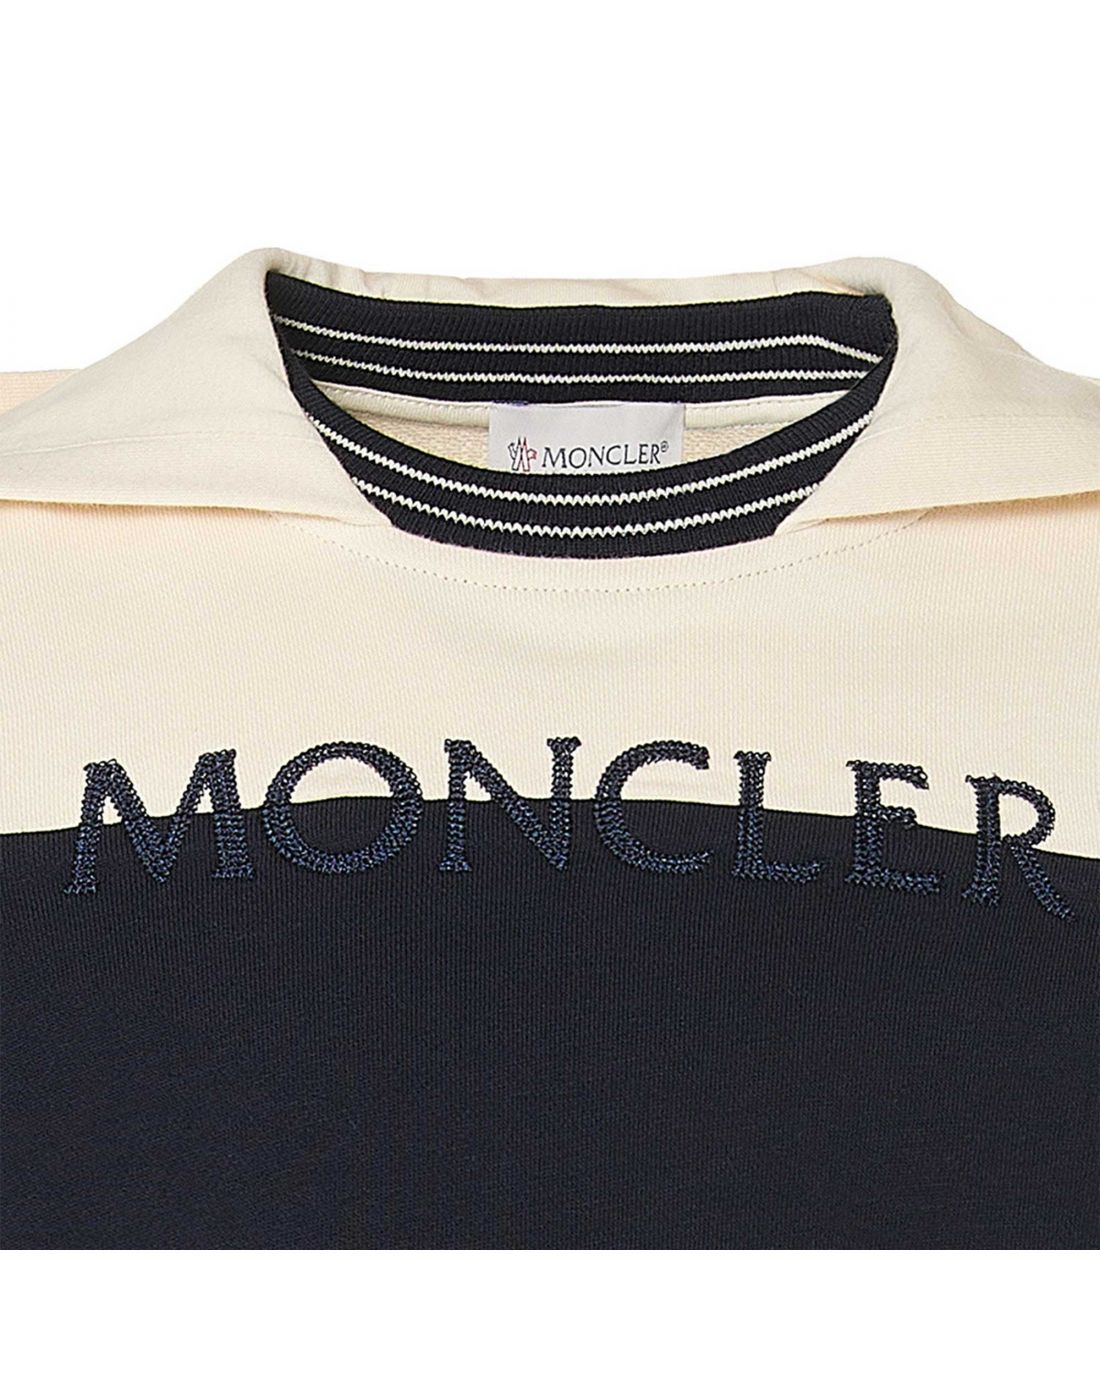 Moncler Children's Blouse Sweatshirt